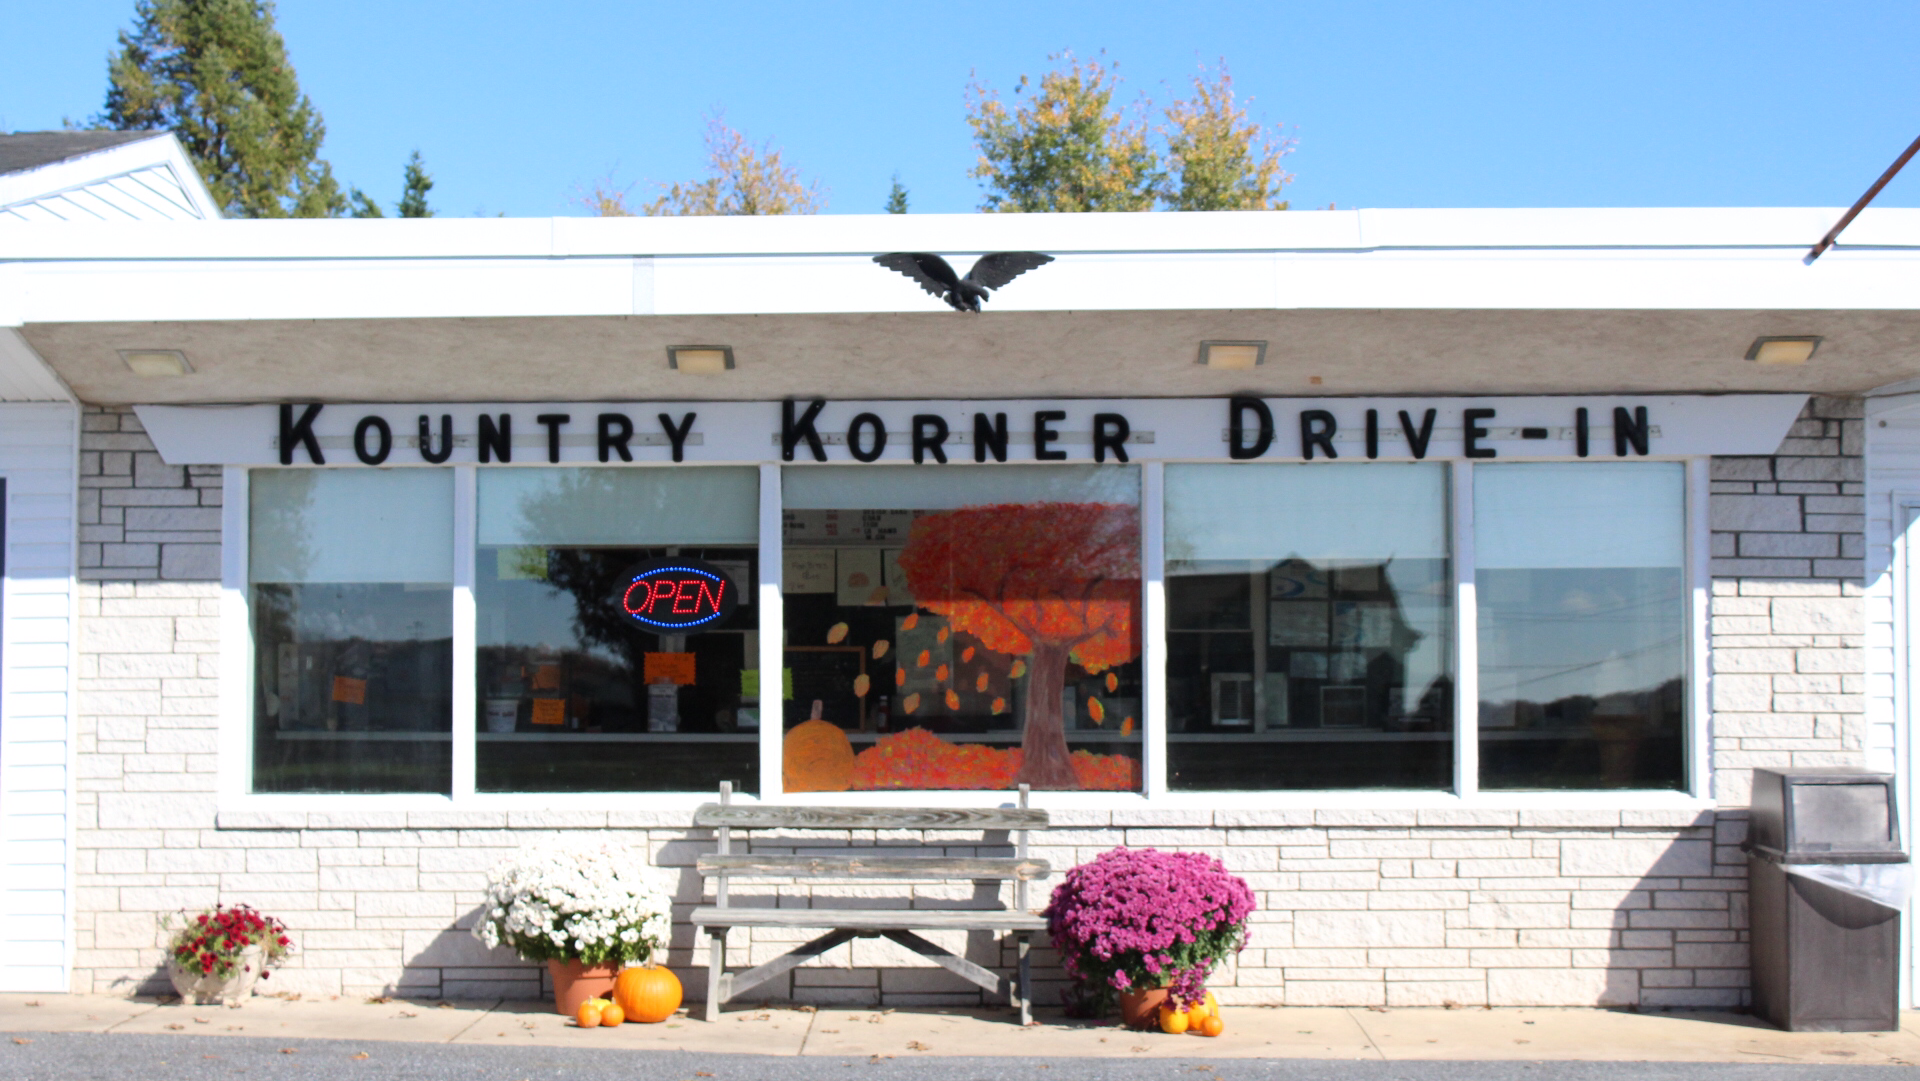 Kountry Korner Drive-In